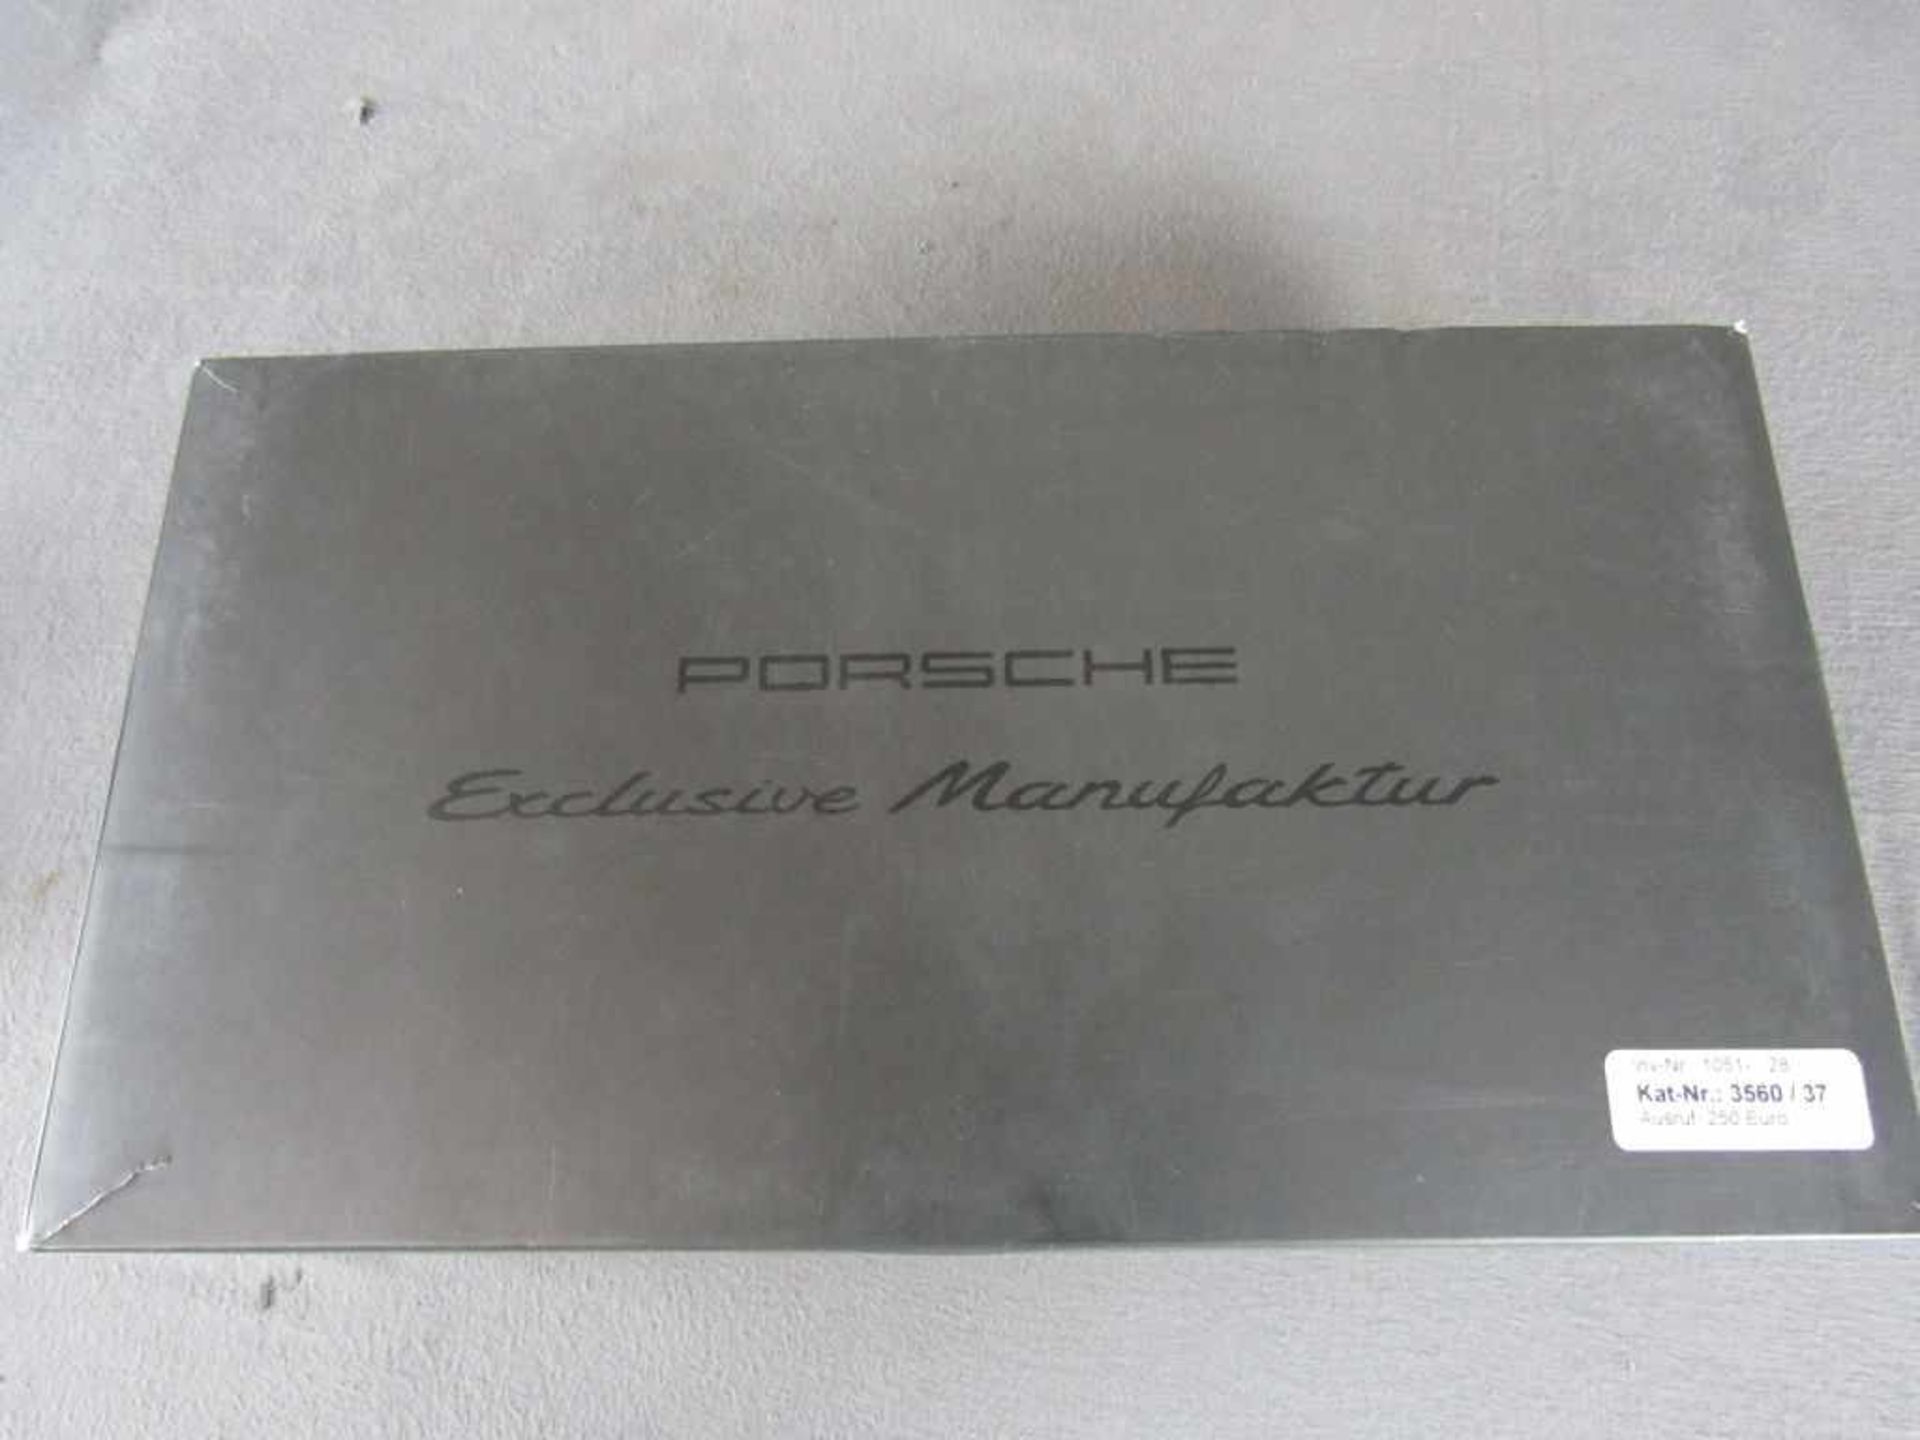 Modellauto Porsche Original Porsche Modell im Maßstab 1:18 in original Box unbespieltes - Bild 6 aus 6